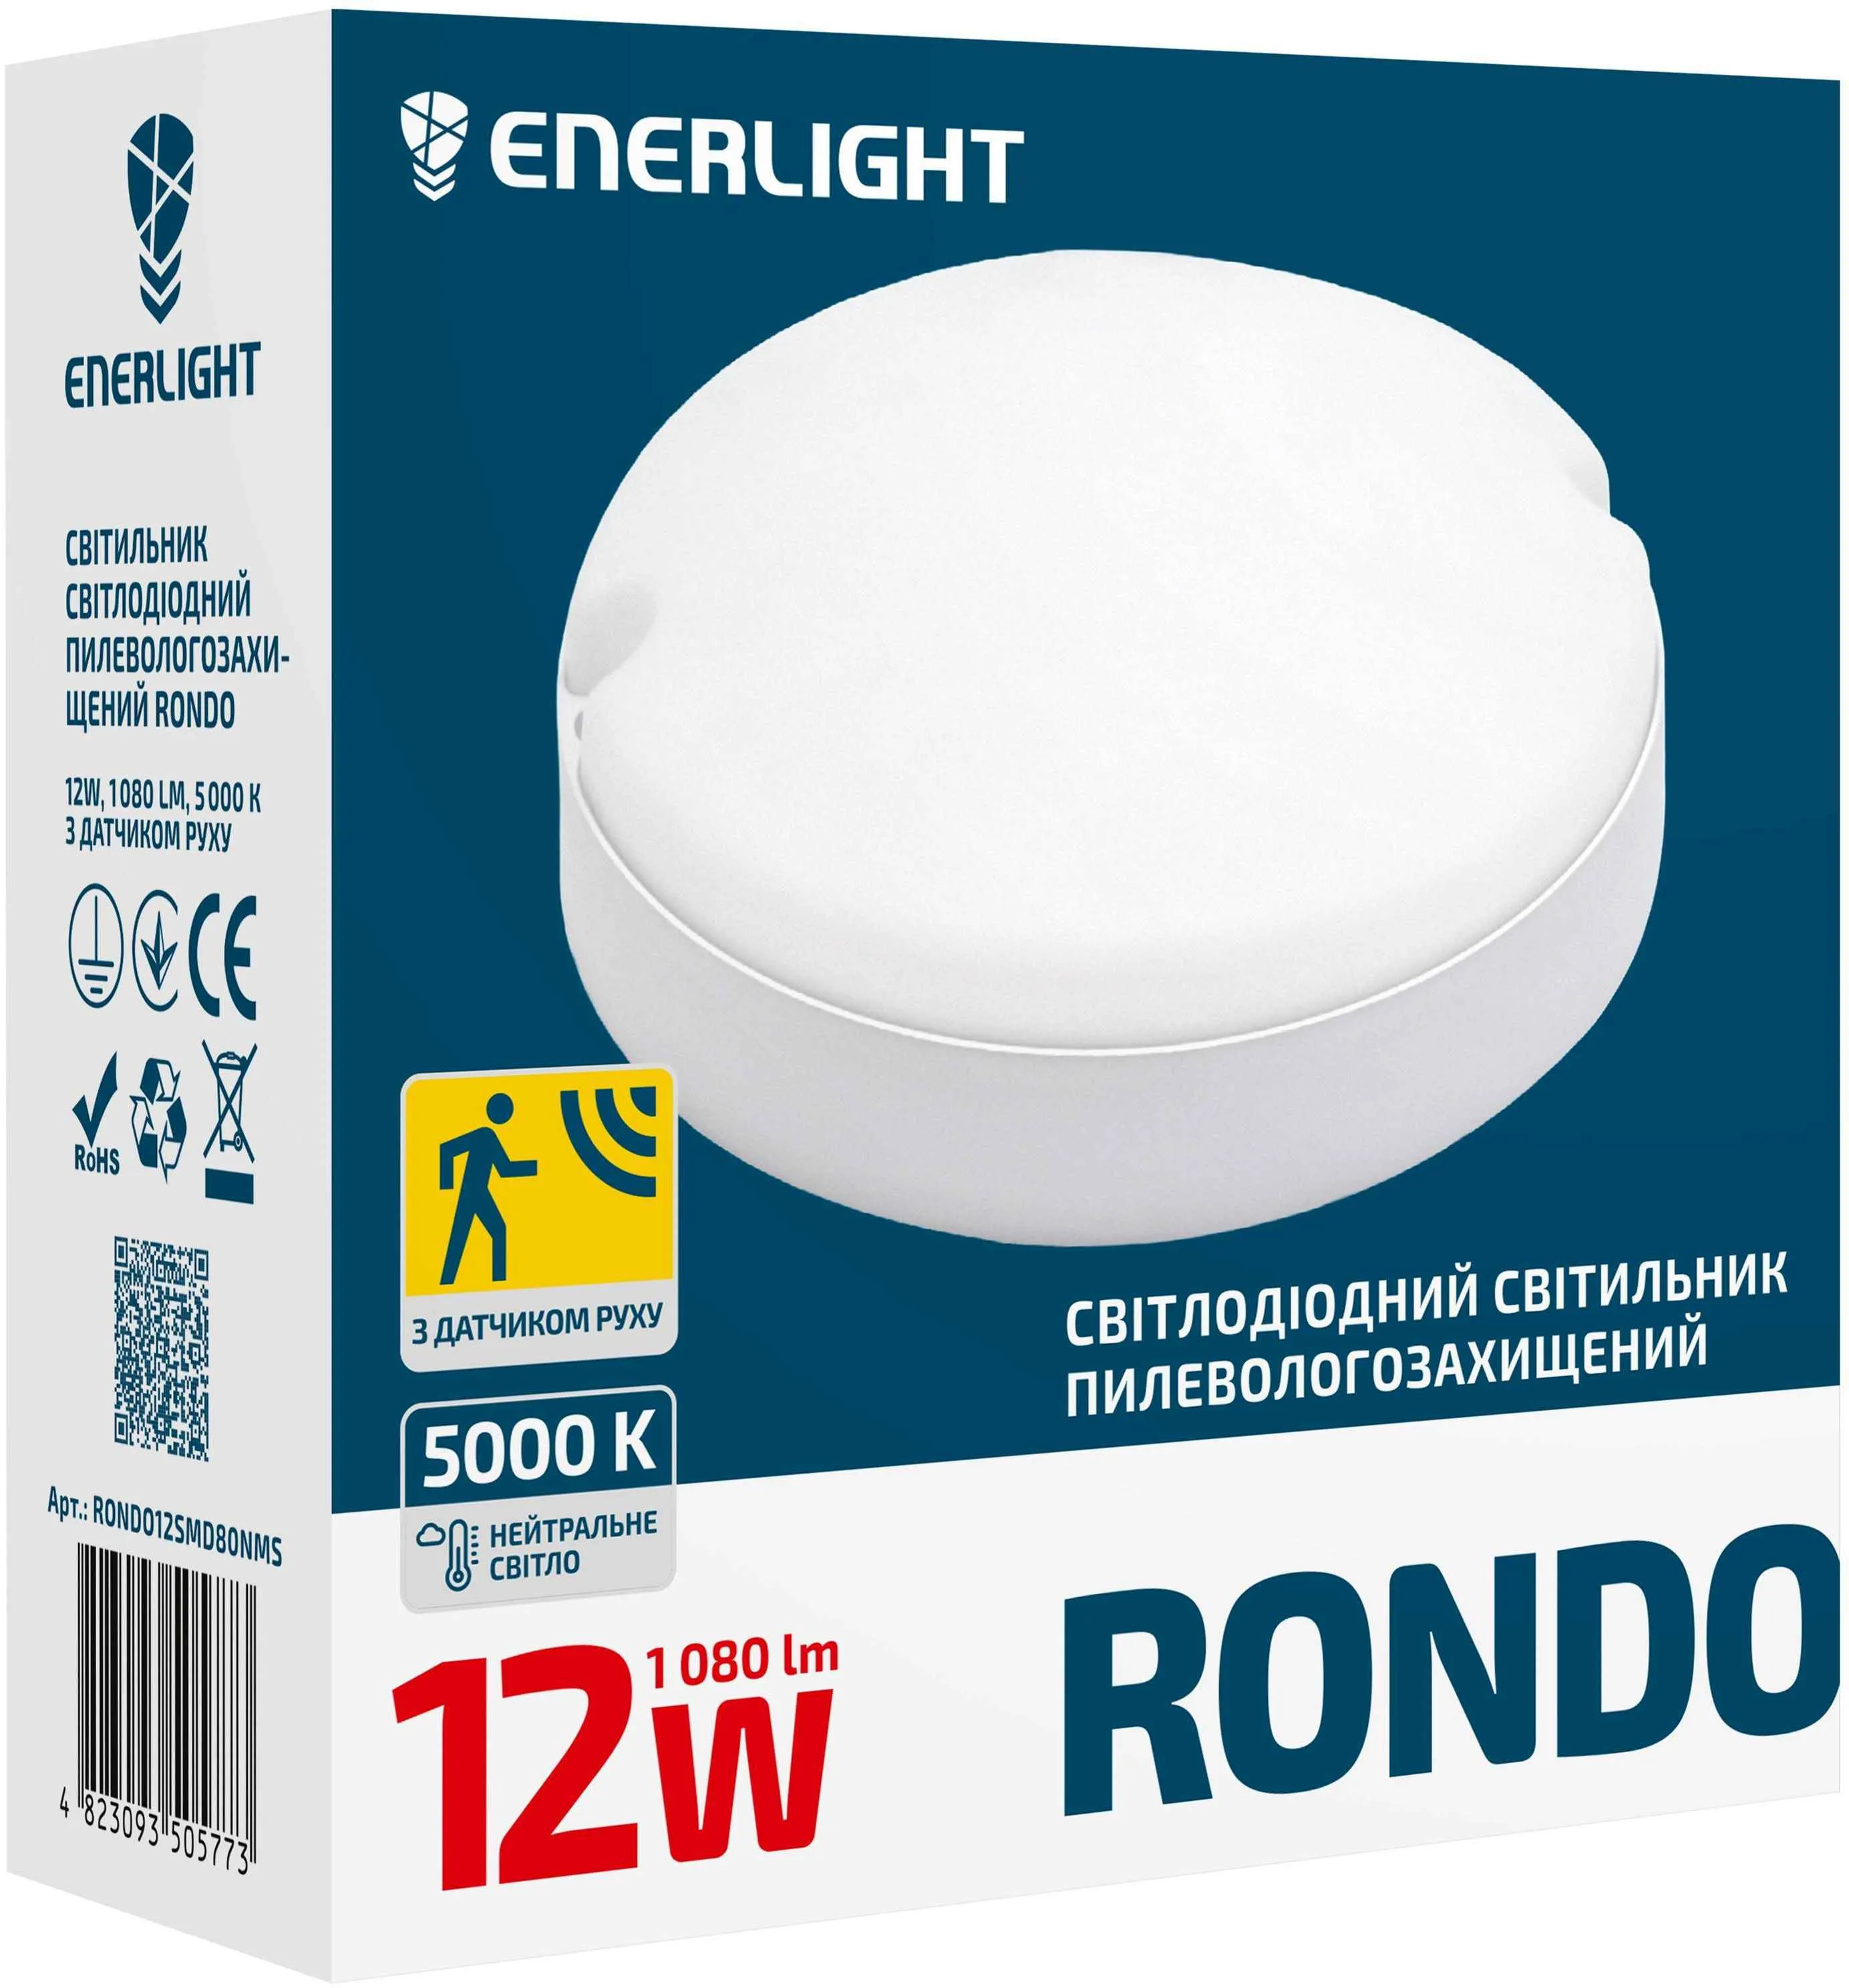 Светильник светодиодный Enerlight, 12 Вт, 5000 К, датчик движения Rondo, RONDO12SMD80NMS купить недорого в Украине, фото 2